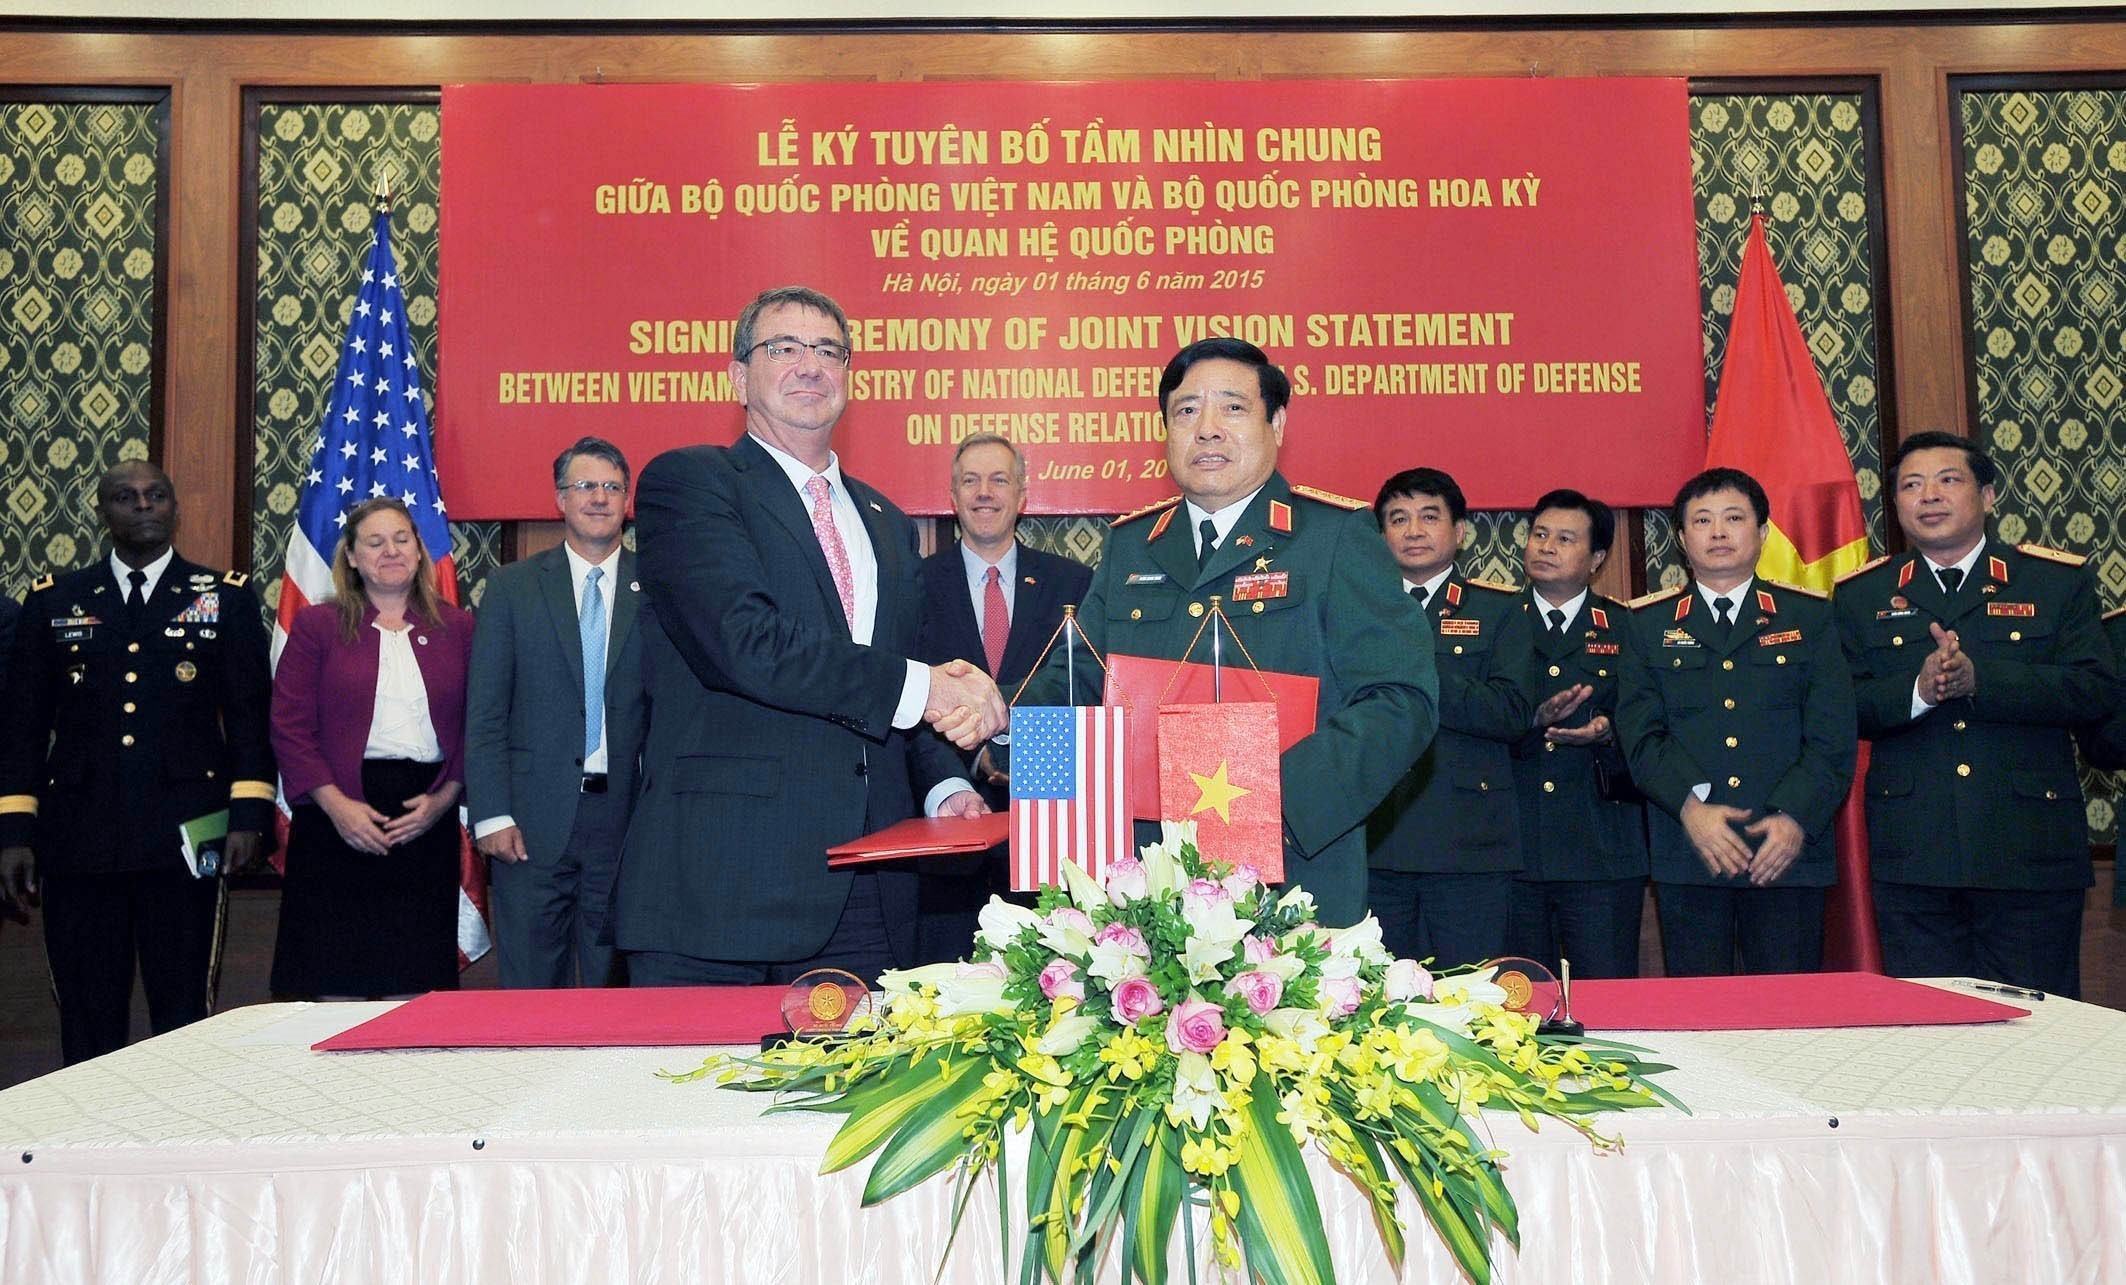         越南国防部部长冯光青与美国国防部长阿什顿•卡特签署《越美防务关系共同愿景宣言》。图自越通社